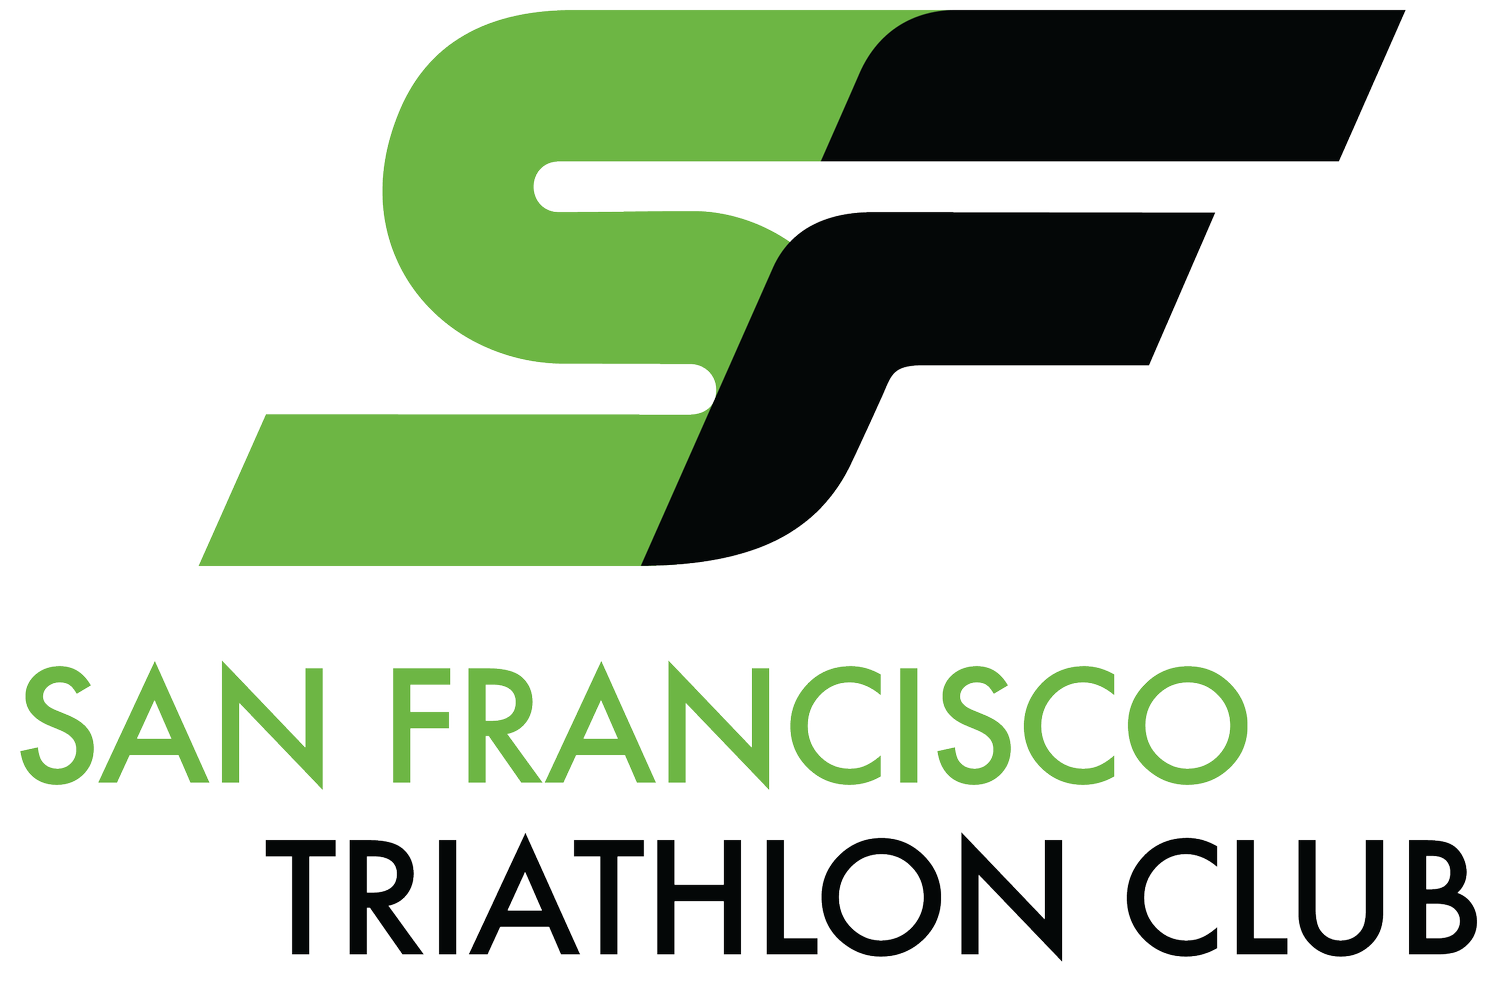 San Francisco Triathlon Club